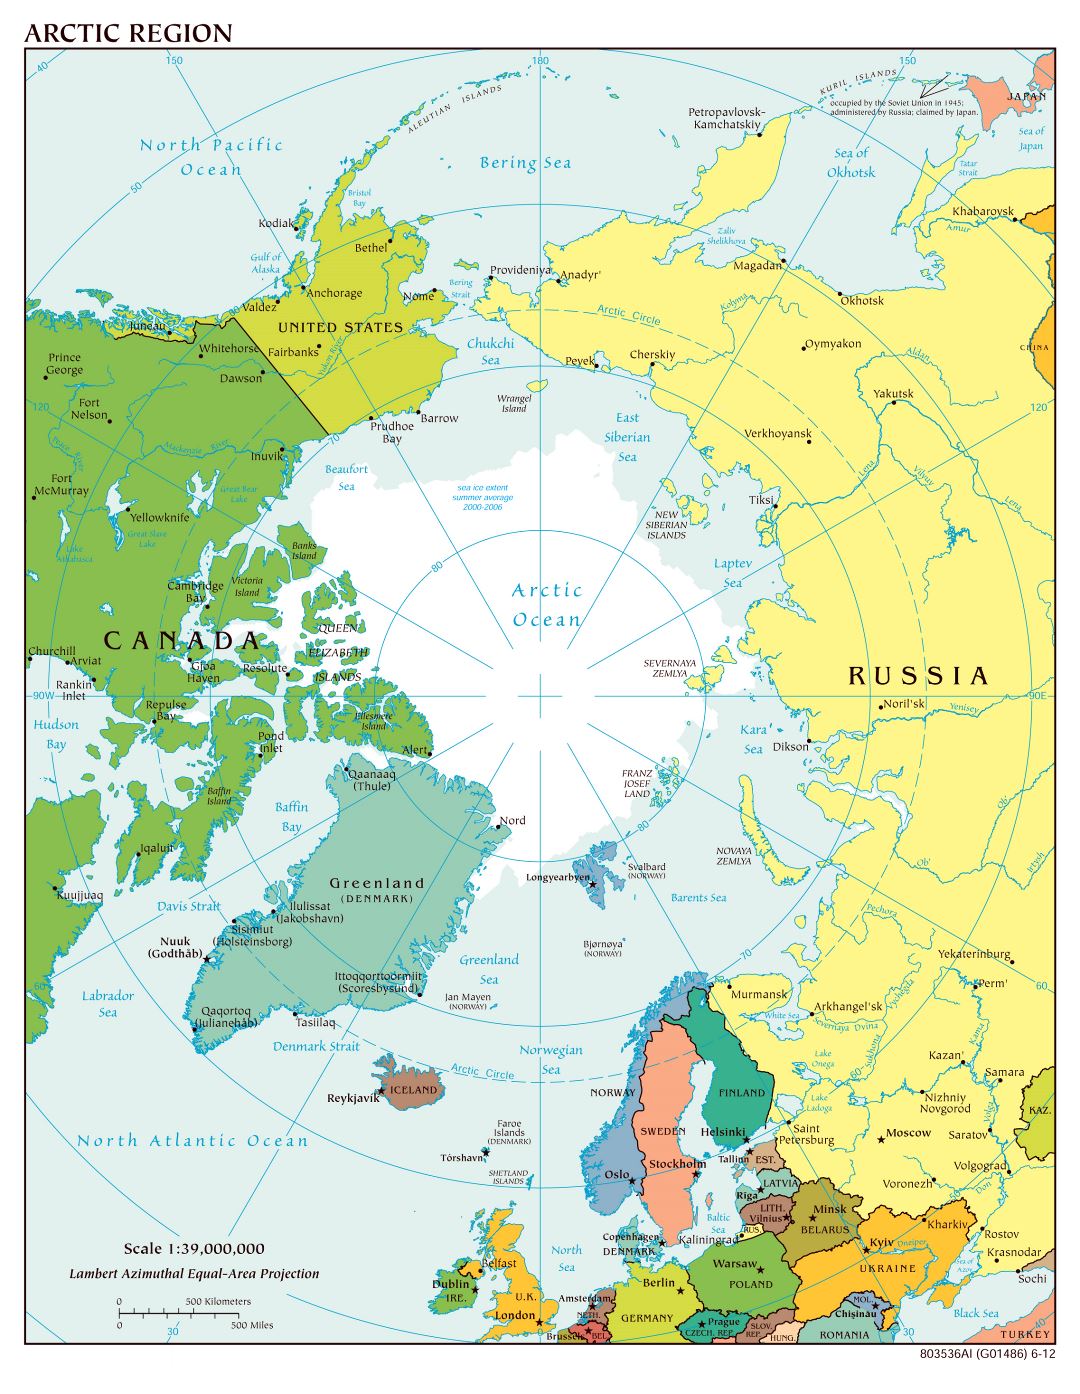 Mapa político a gran escala de la Región Ártica - 2012